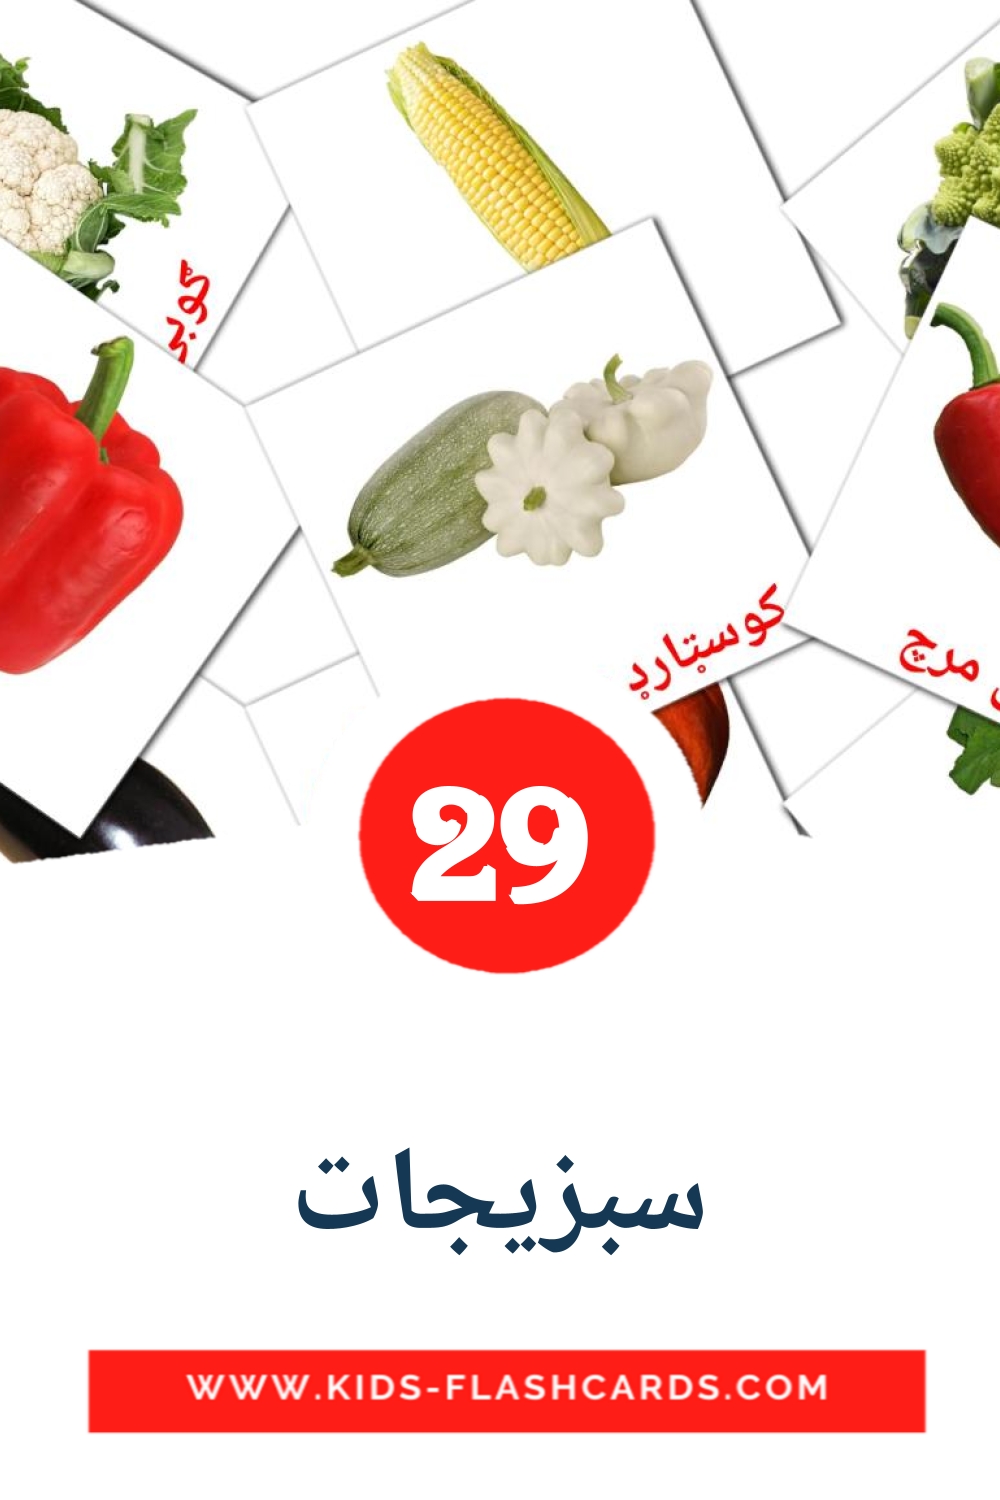 29 سبزیجات fotokaarten voor kleuters in het pashto